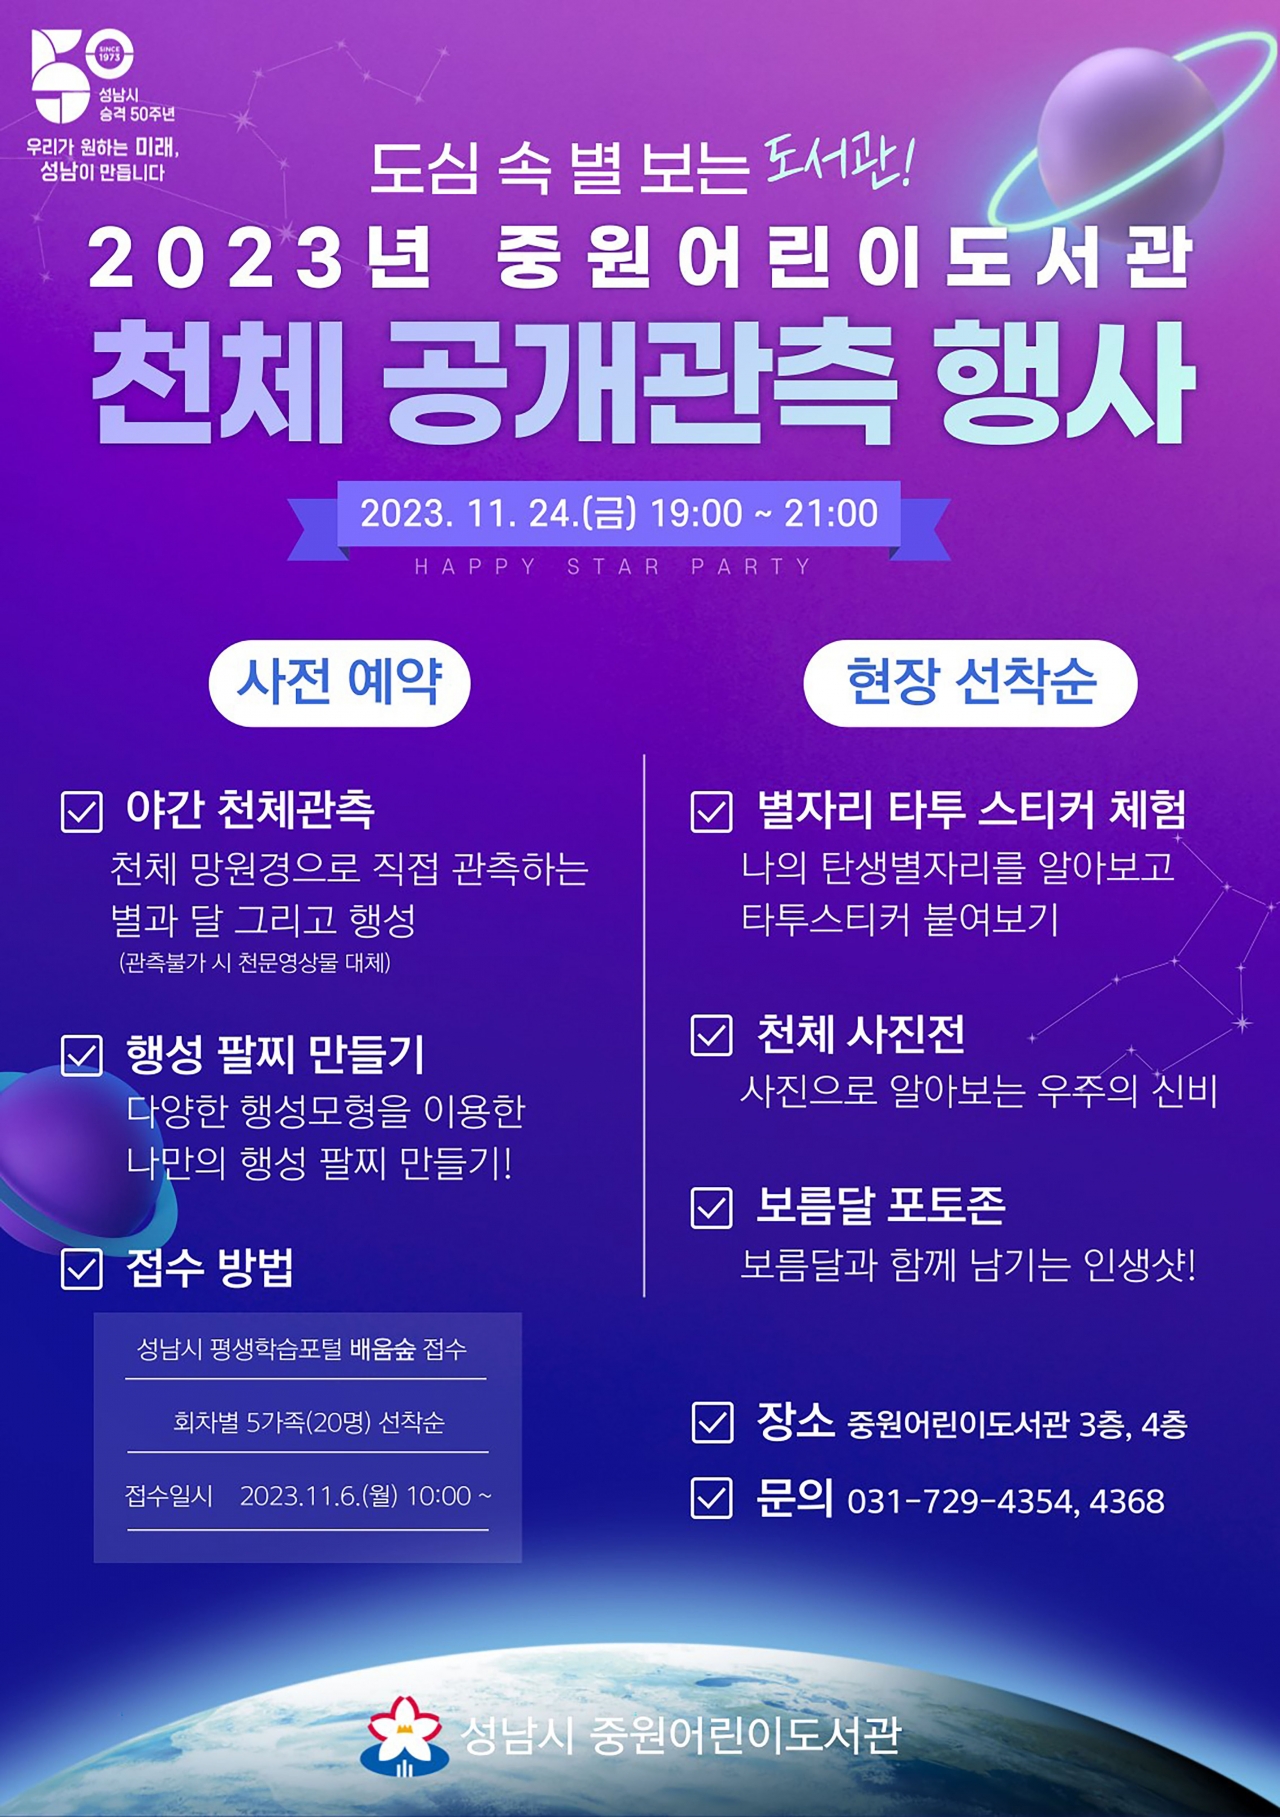 성남시 천체 관측 행사 11월 24일 개최 안내 포스터